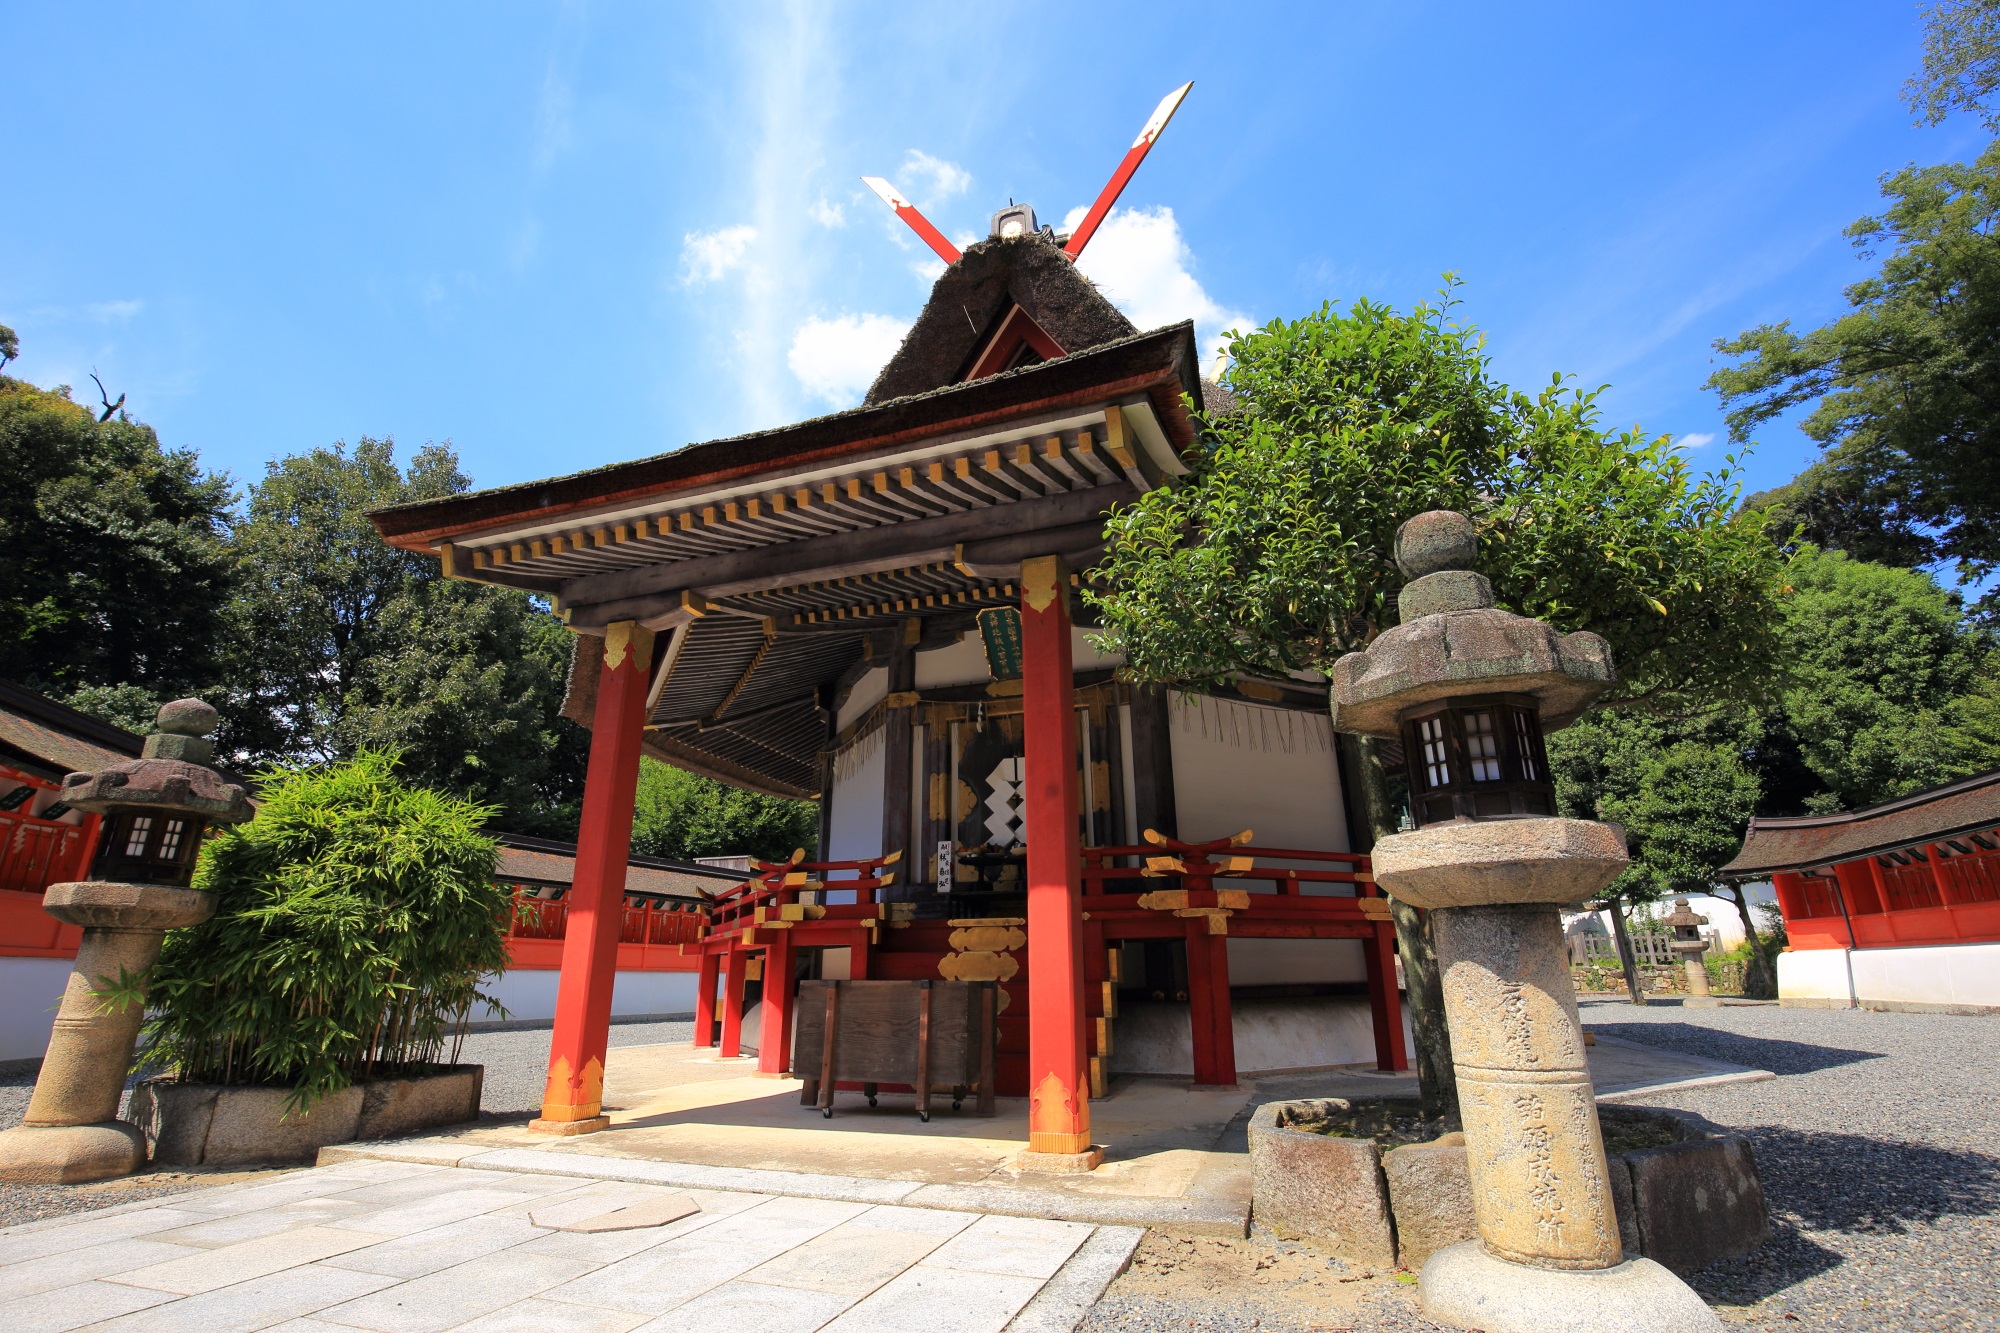 さいじょうしょだいげんぐう 吉田神社 全国の神様 斎場所大元宮